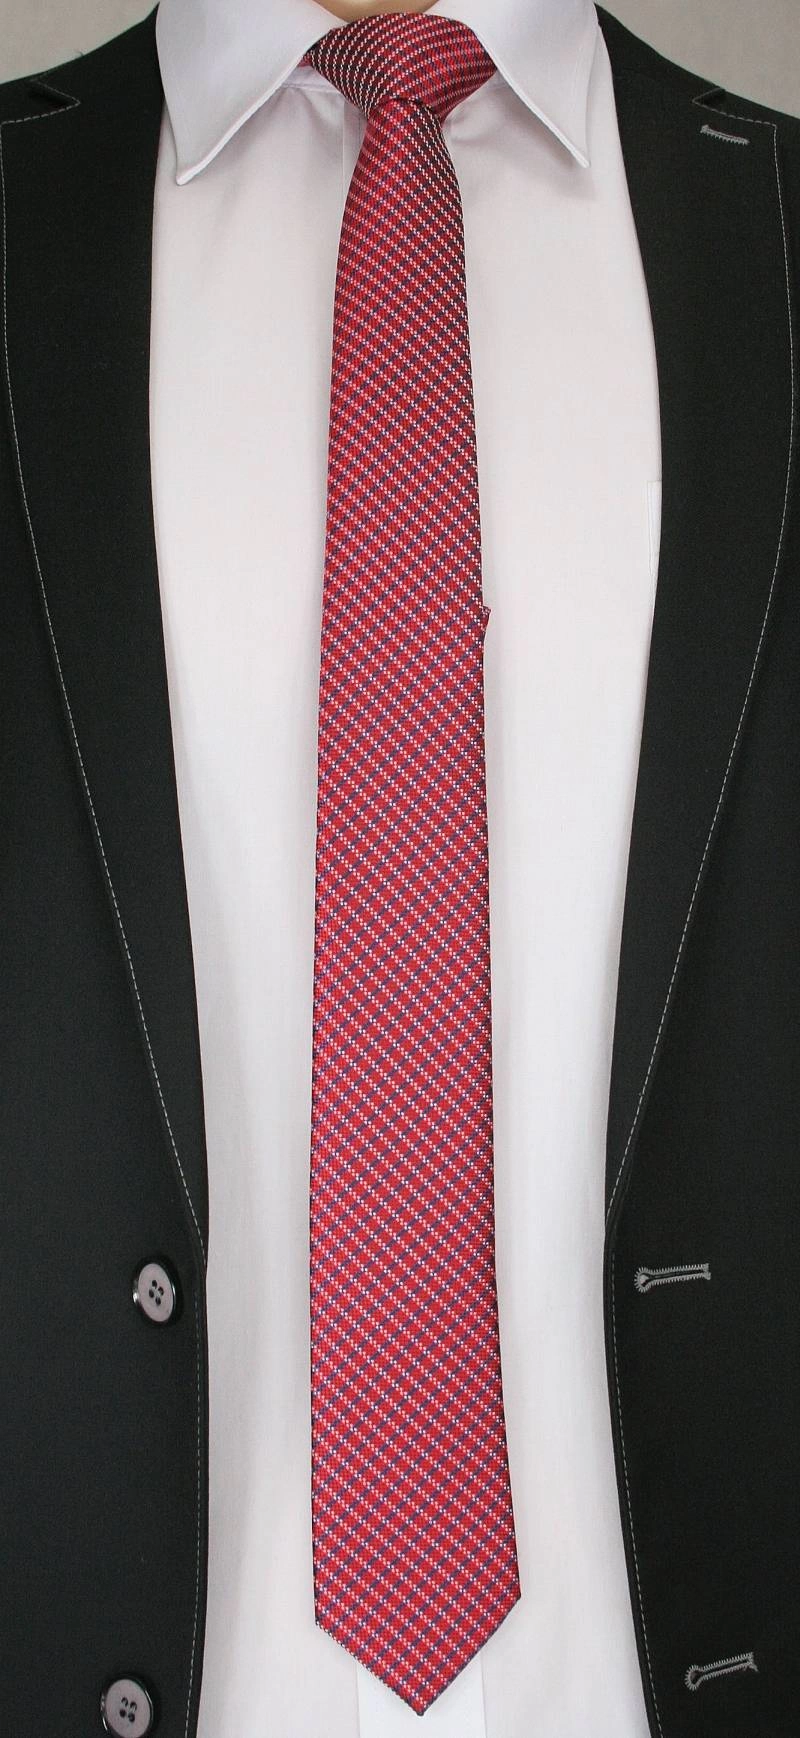 Oryginalny Krawat Męski w Białe Prążki, w Kratkę - 6 cm -  Alties, Kolorowy